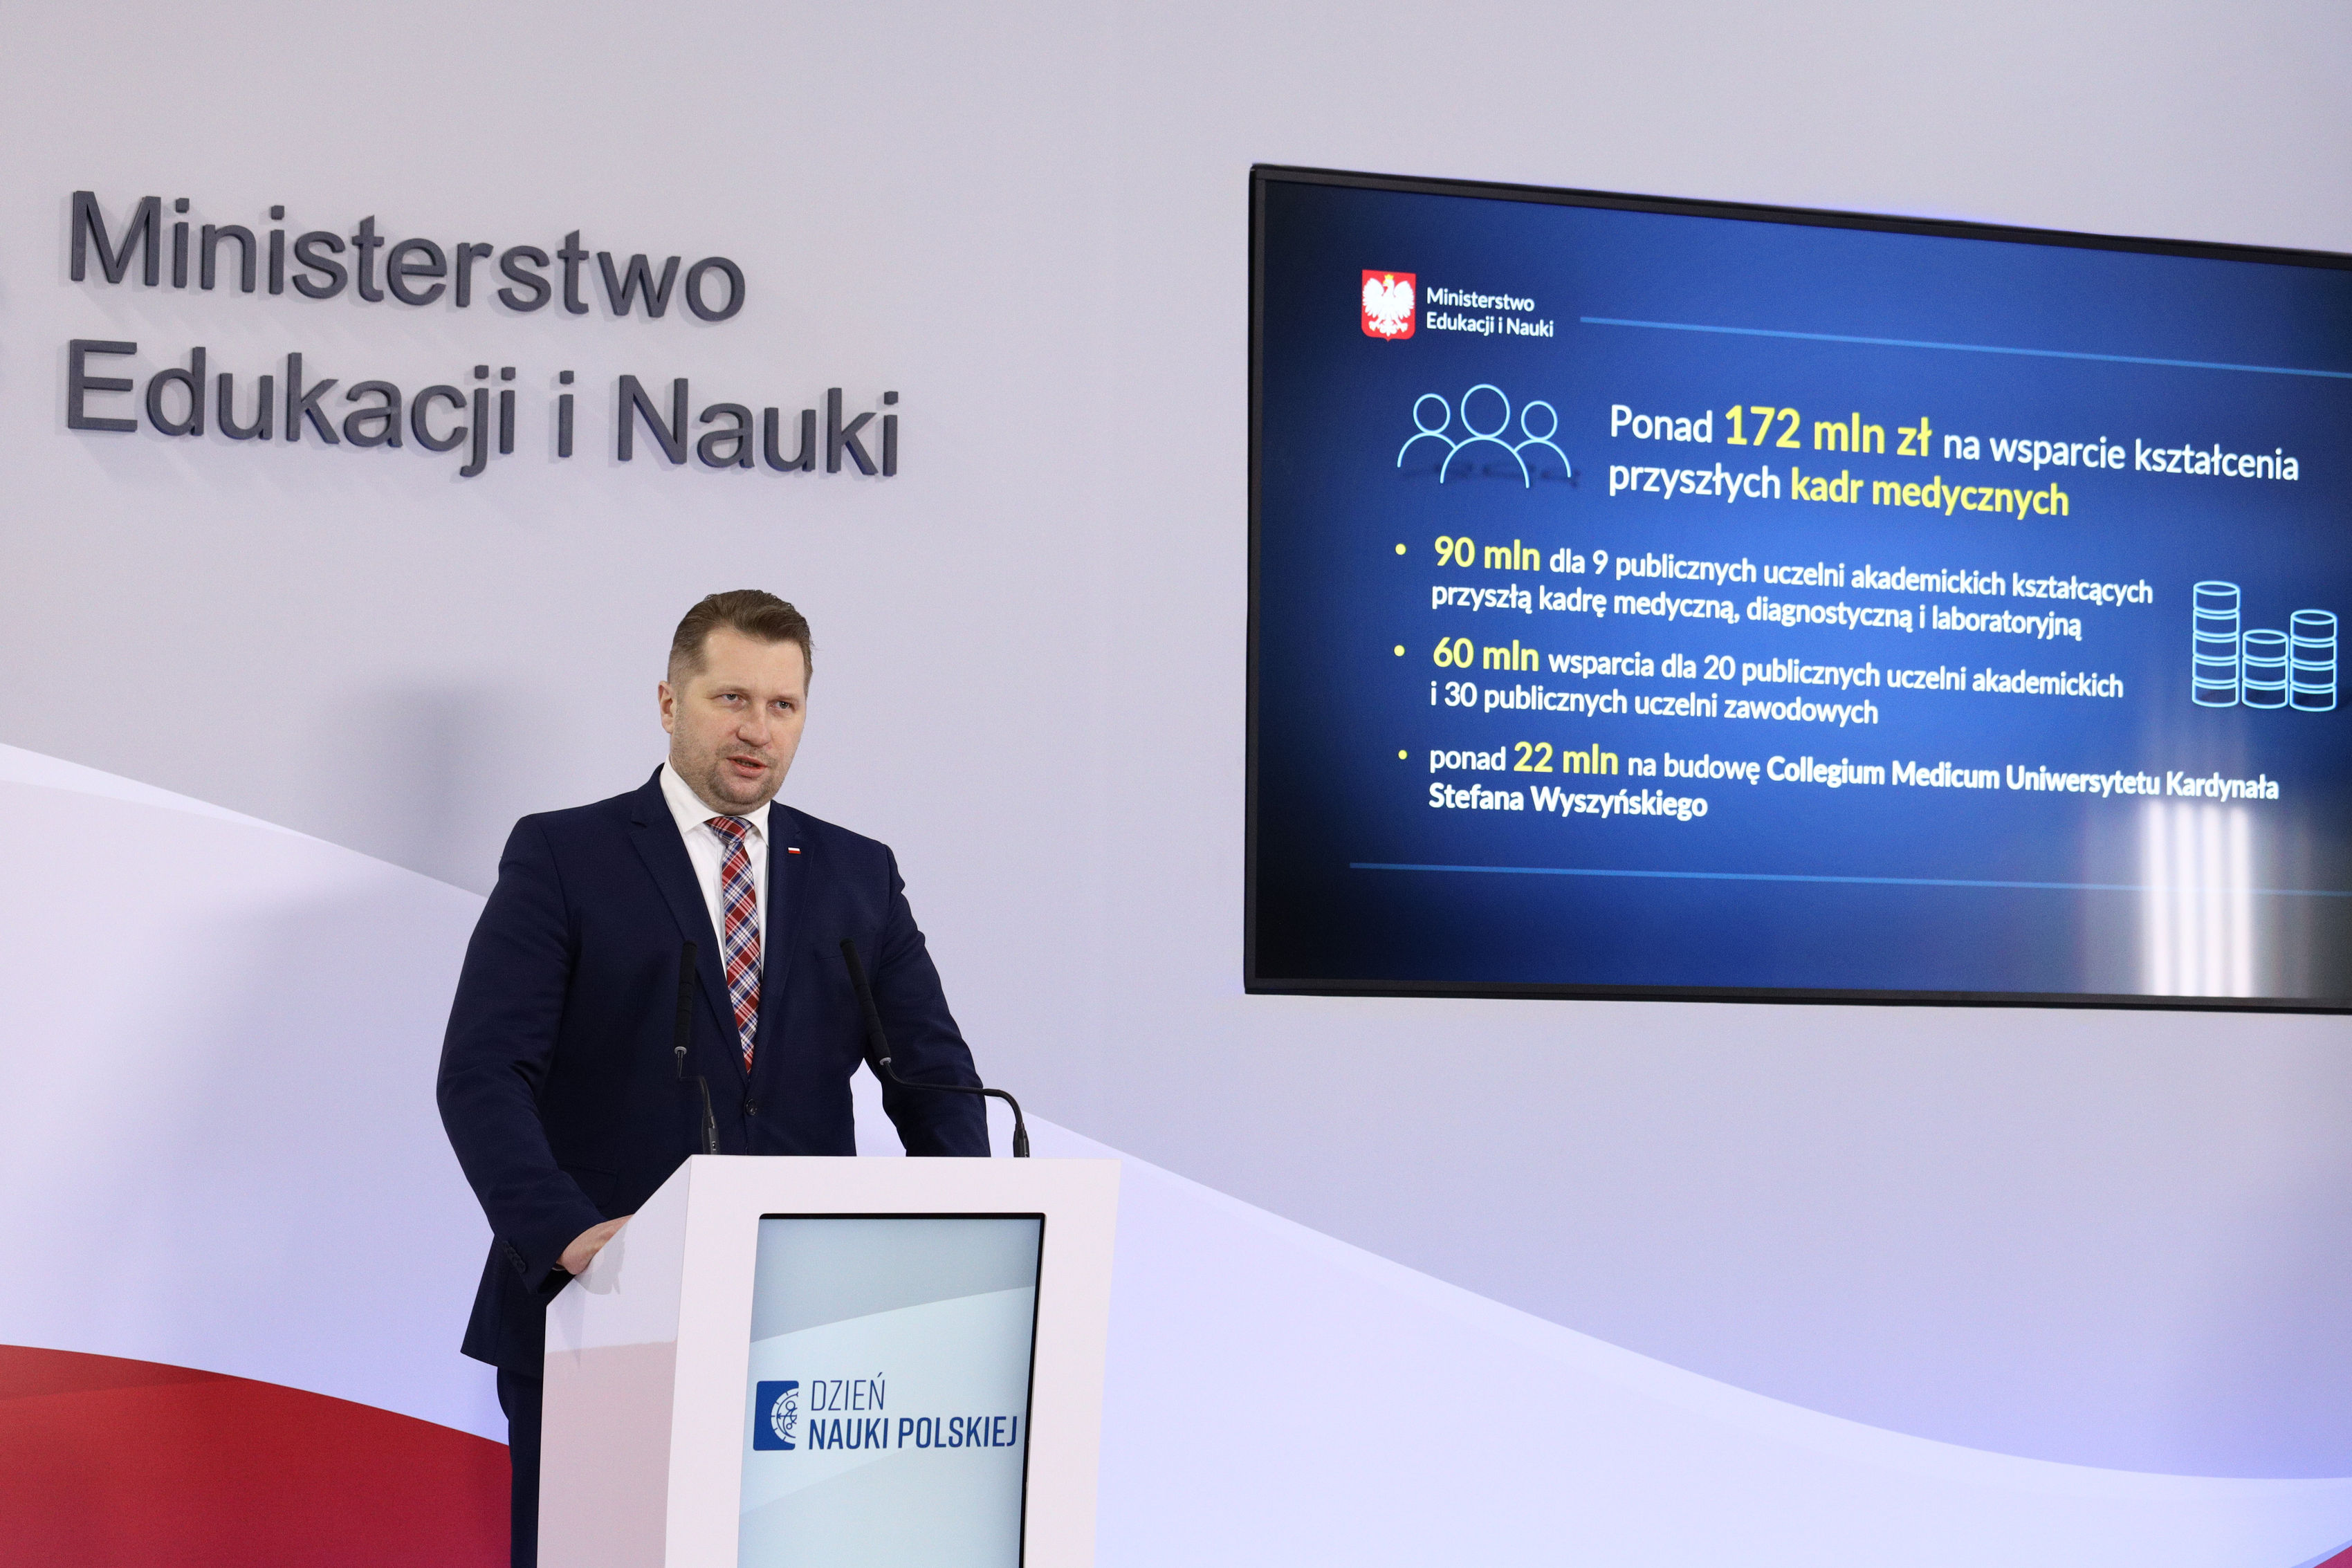 Zdjęcie z konferencji Ministra Edukacji i Nauki Przemysława Czarnka na temat: Dzień Nauki Polskiej – podsumowanie sukcesów 2020 r.